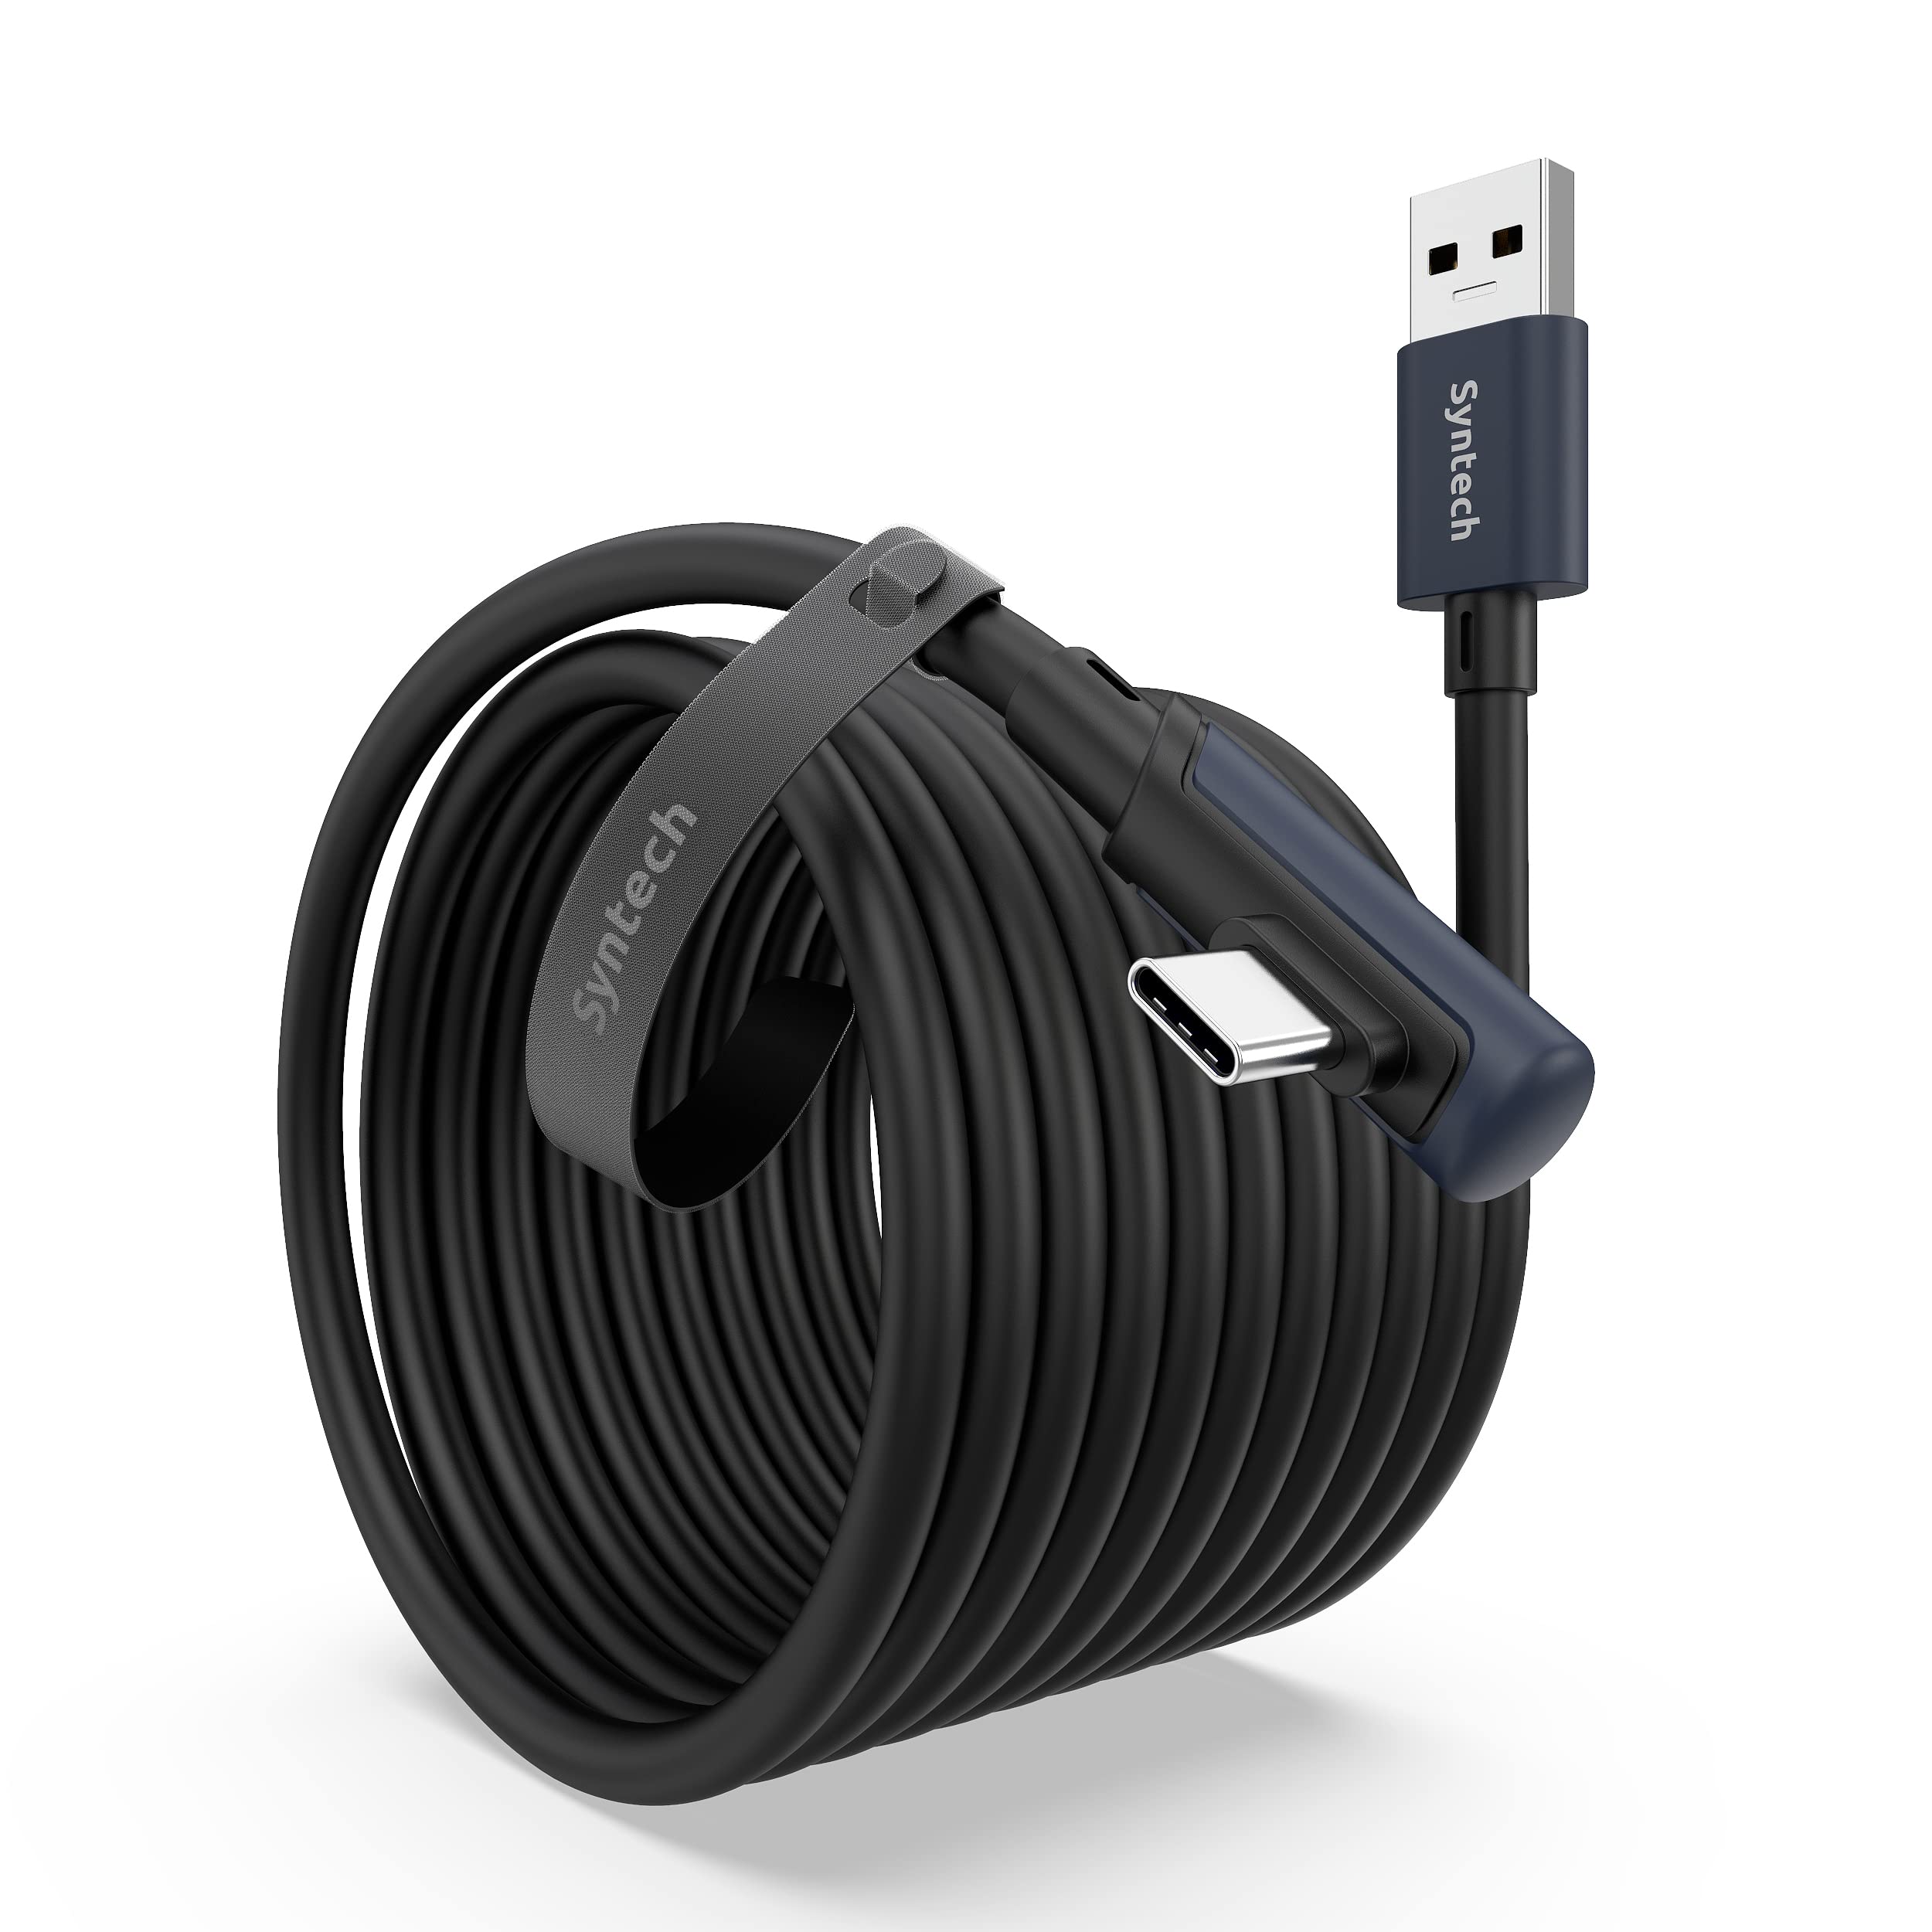 Syntech Link Kabel 5M Kompatibel mit Meta/Oculus Quest 2 Zubehör VR  Headset, separater USB C Ladeanschluss für ausreichende Stromversorgung, USB  3.0 zu Typ C LED Licht für Steam VR/Gaming PC : 